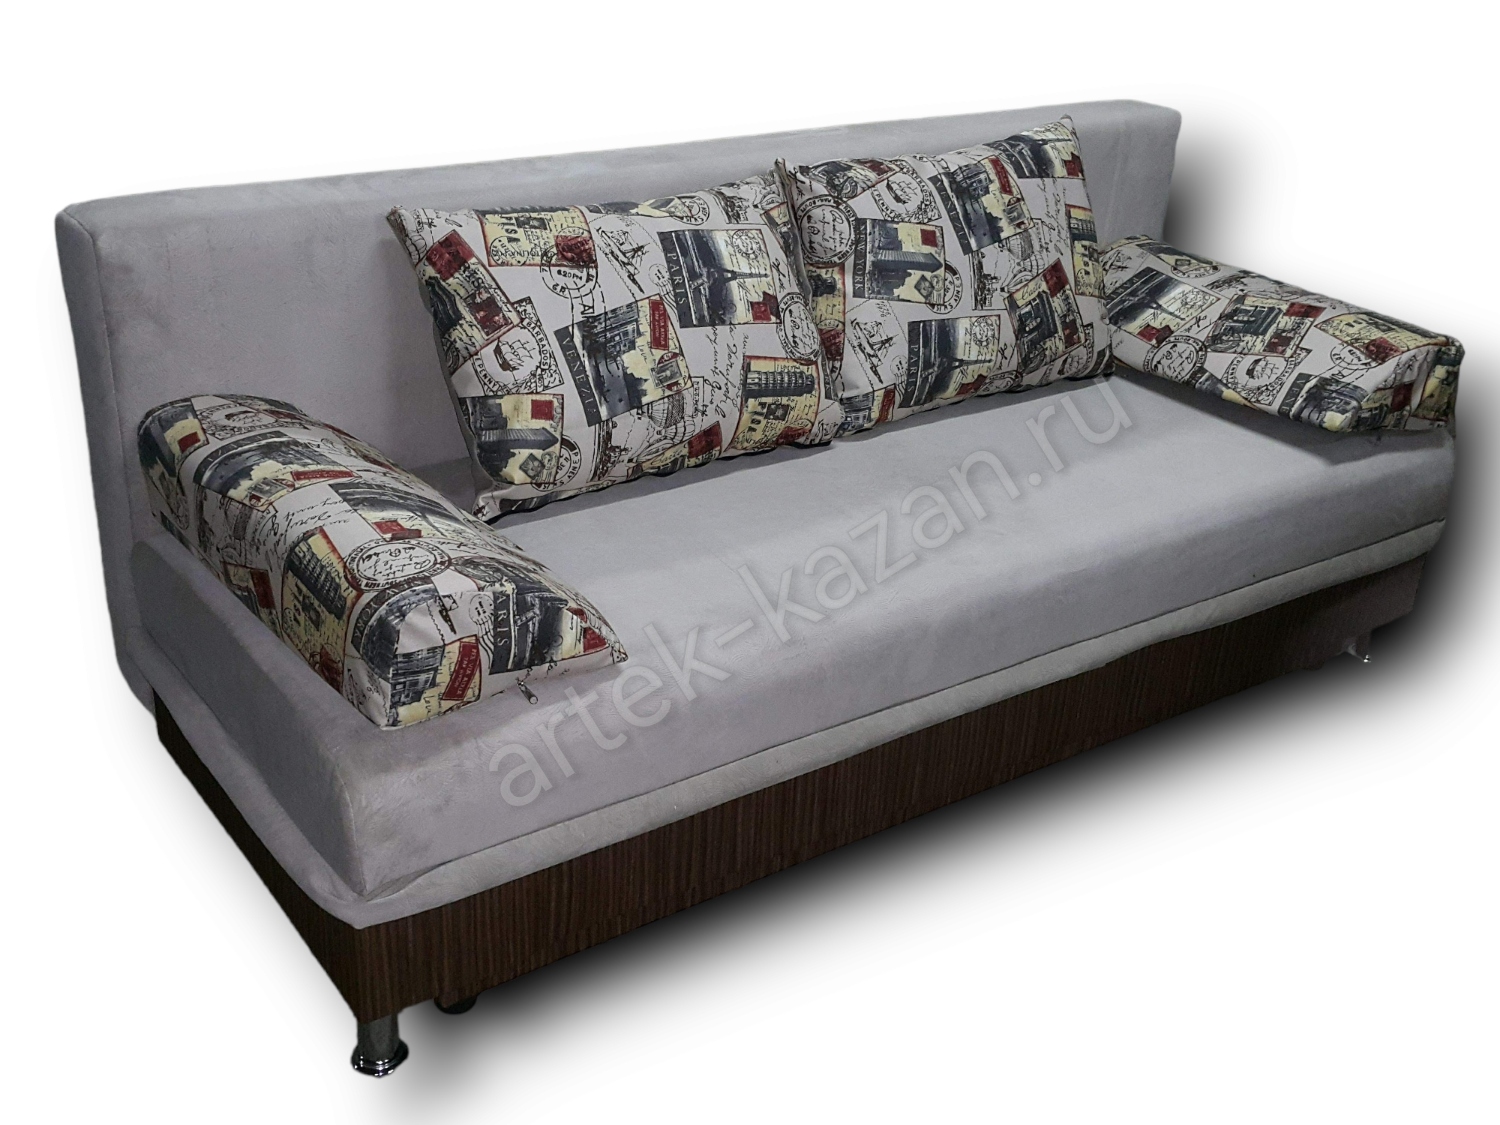 диван еврокнижка Эконом фото № 60. Купить недорогой диван по низкой цене от производителя можно у нас.